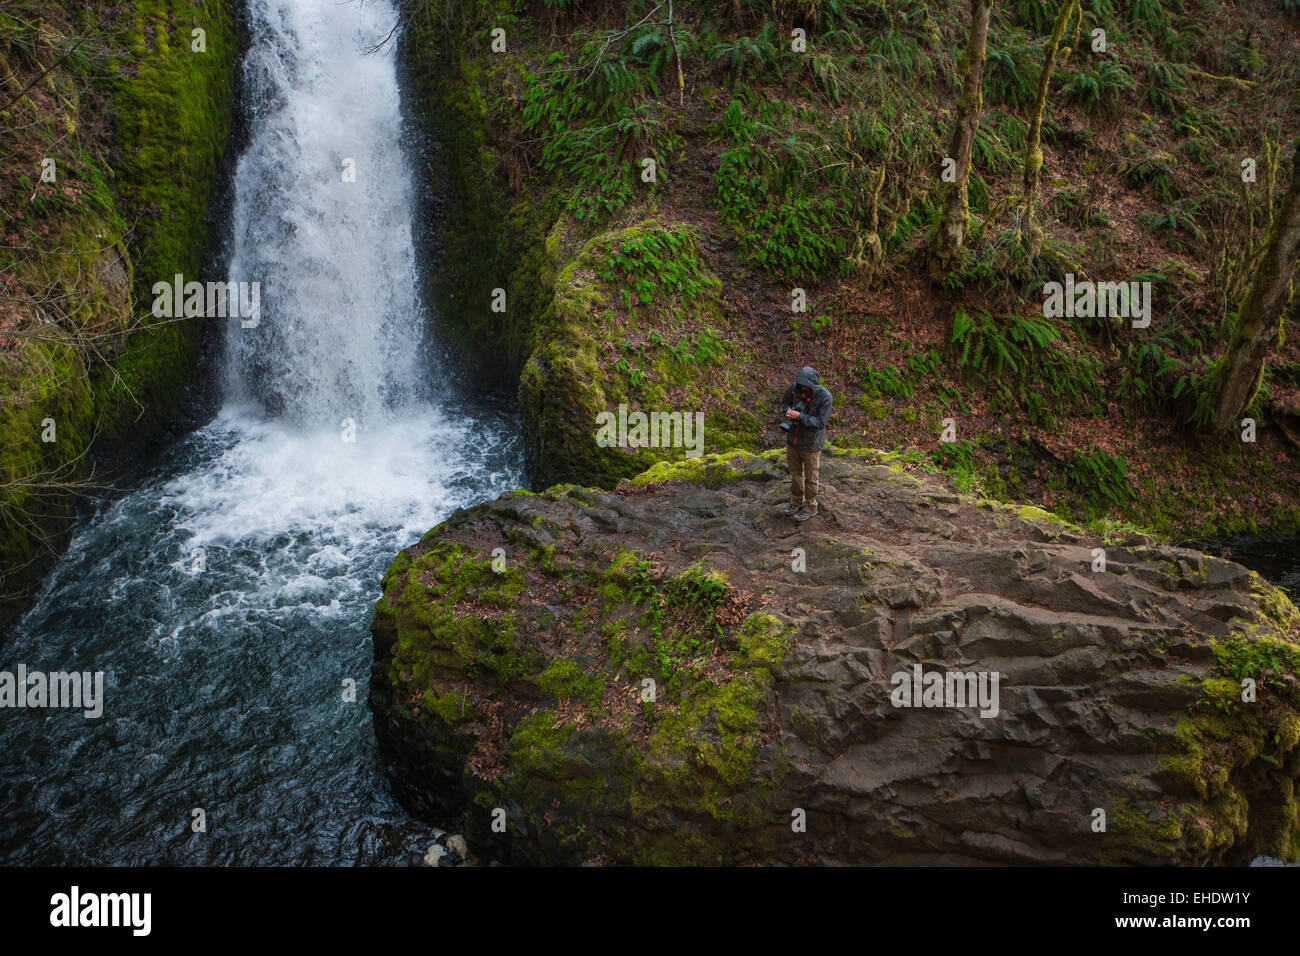 männlichen Fotografen stehen auf einem großen Felsen direkt neben einem massiven Wasserfall in Brautmoden fällt Oregon Überprüfung seiner Aufnahmen Stockfoto